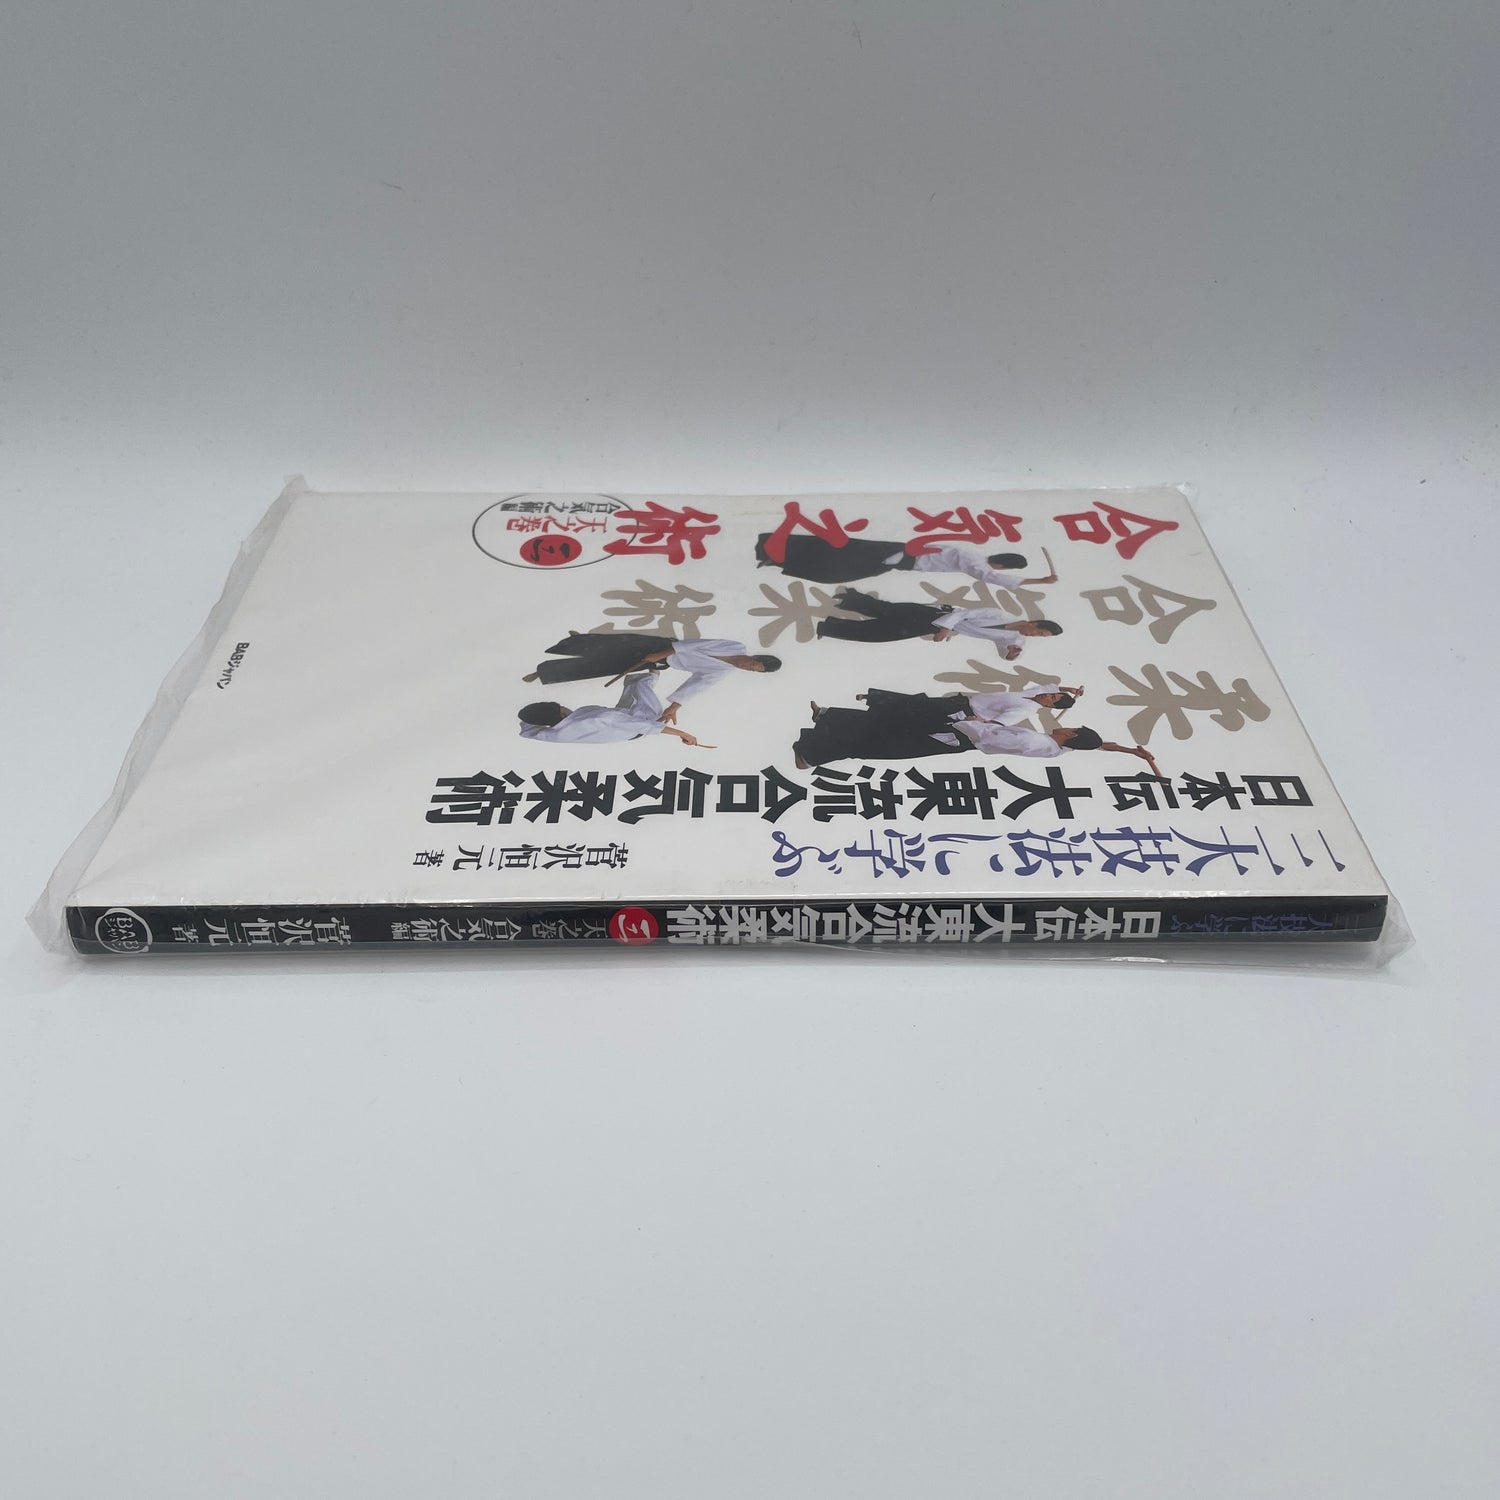 Nihonden Daito Ryu Aikijujutsu Book 3: Aiki no Jutsu by Kogen Sugasawa (Preowned)